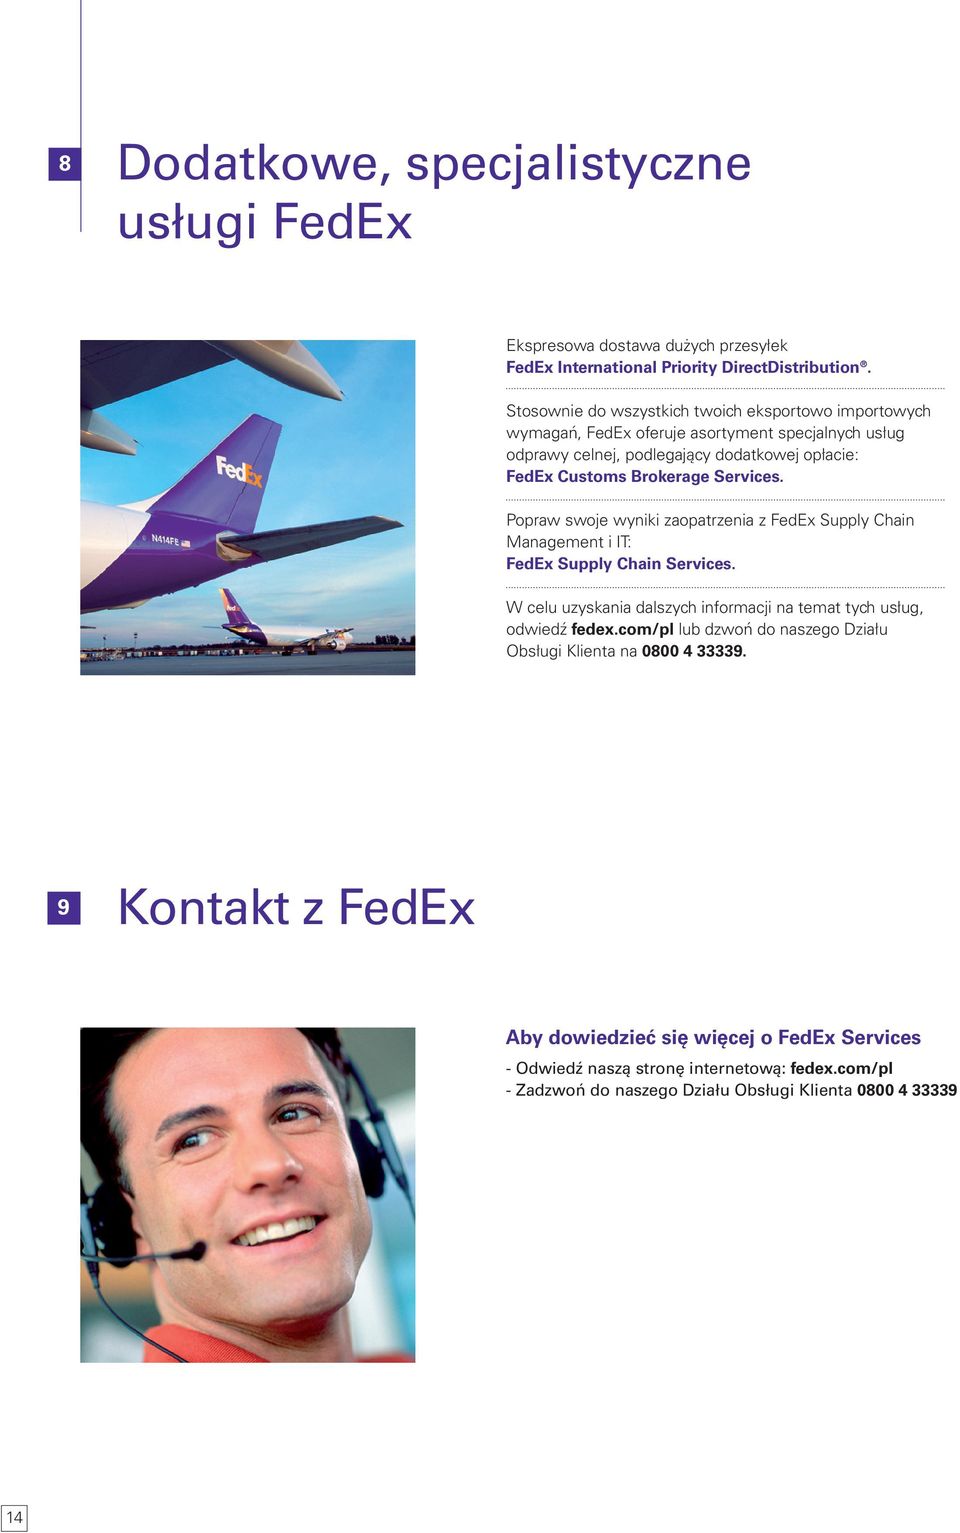 Services. Popraw swoje wyniki zaopatrzenia z FedEx Supply Chain Management i IT: FedEx Supply Chain Services.